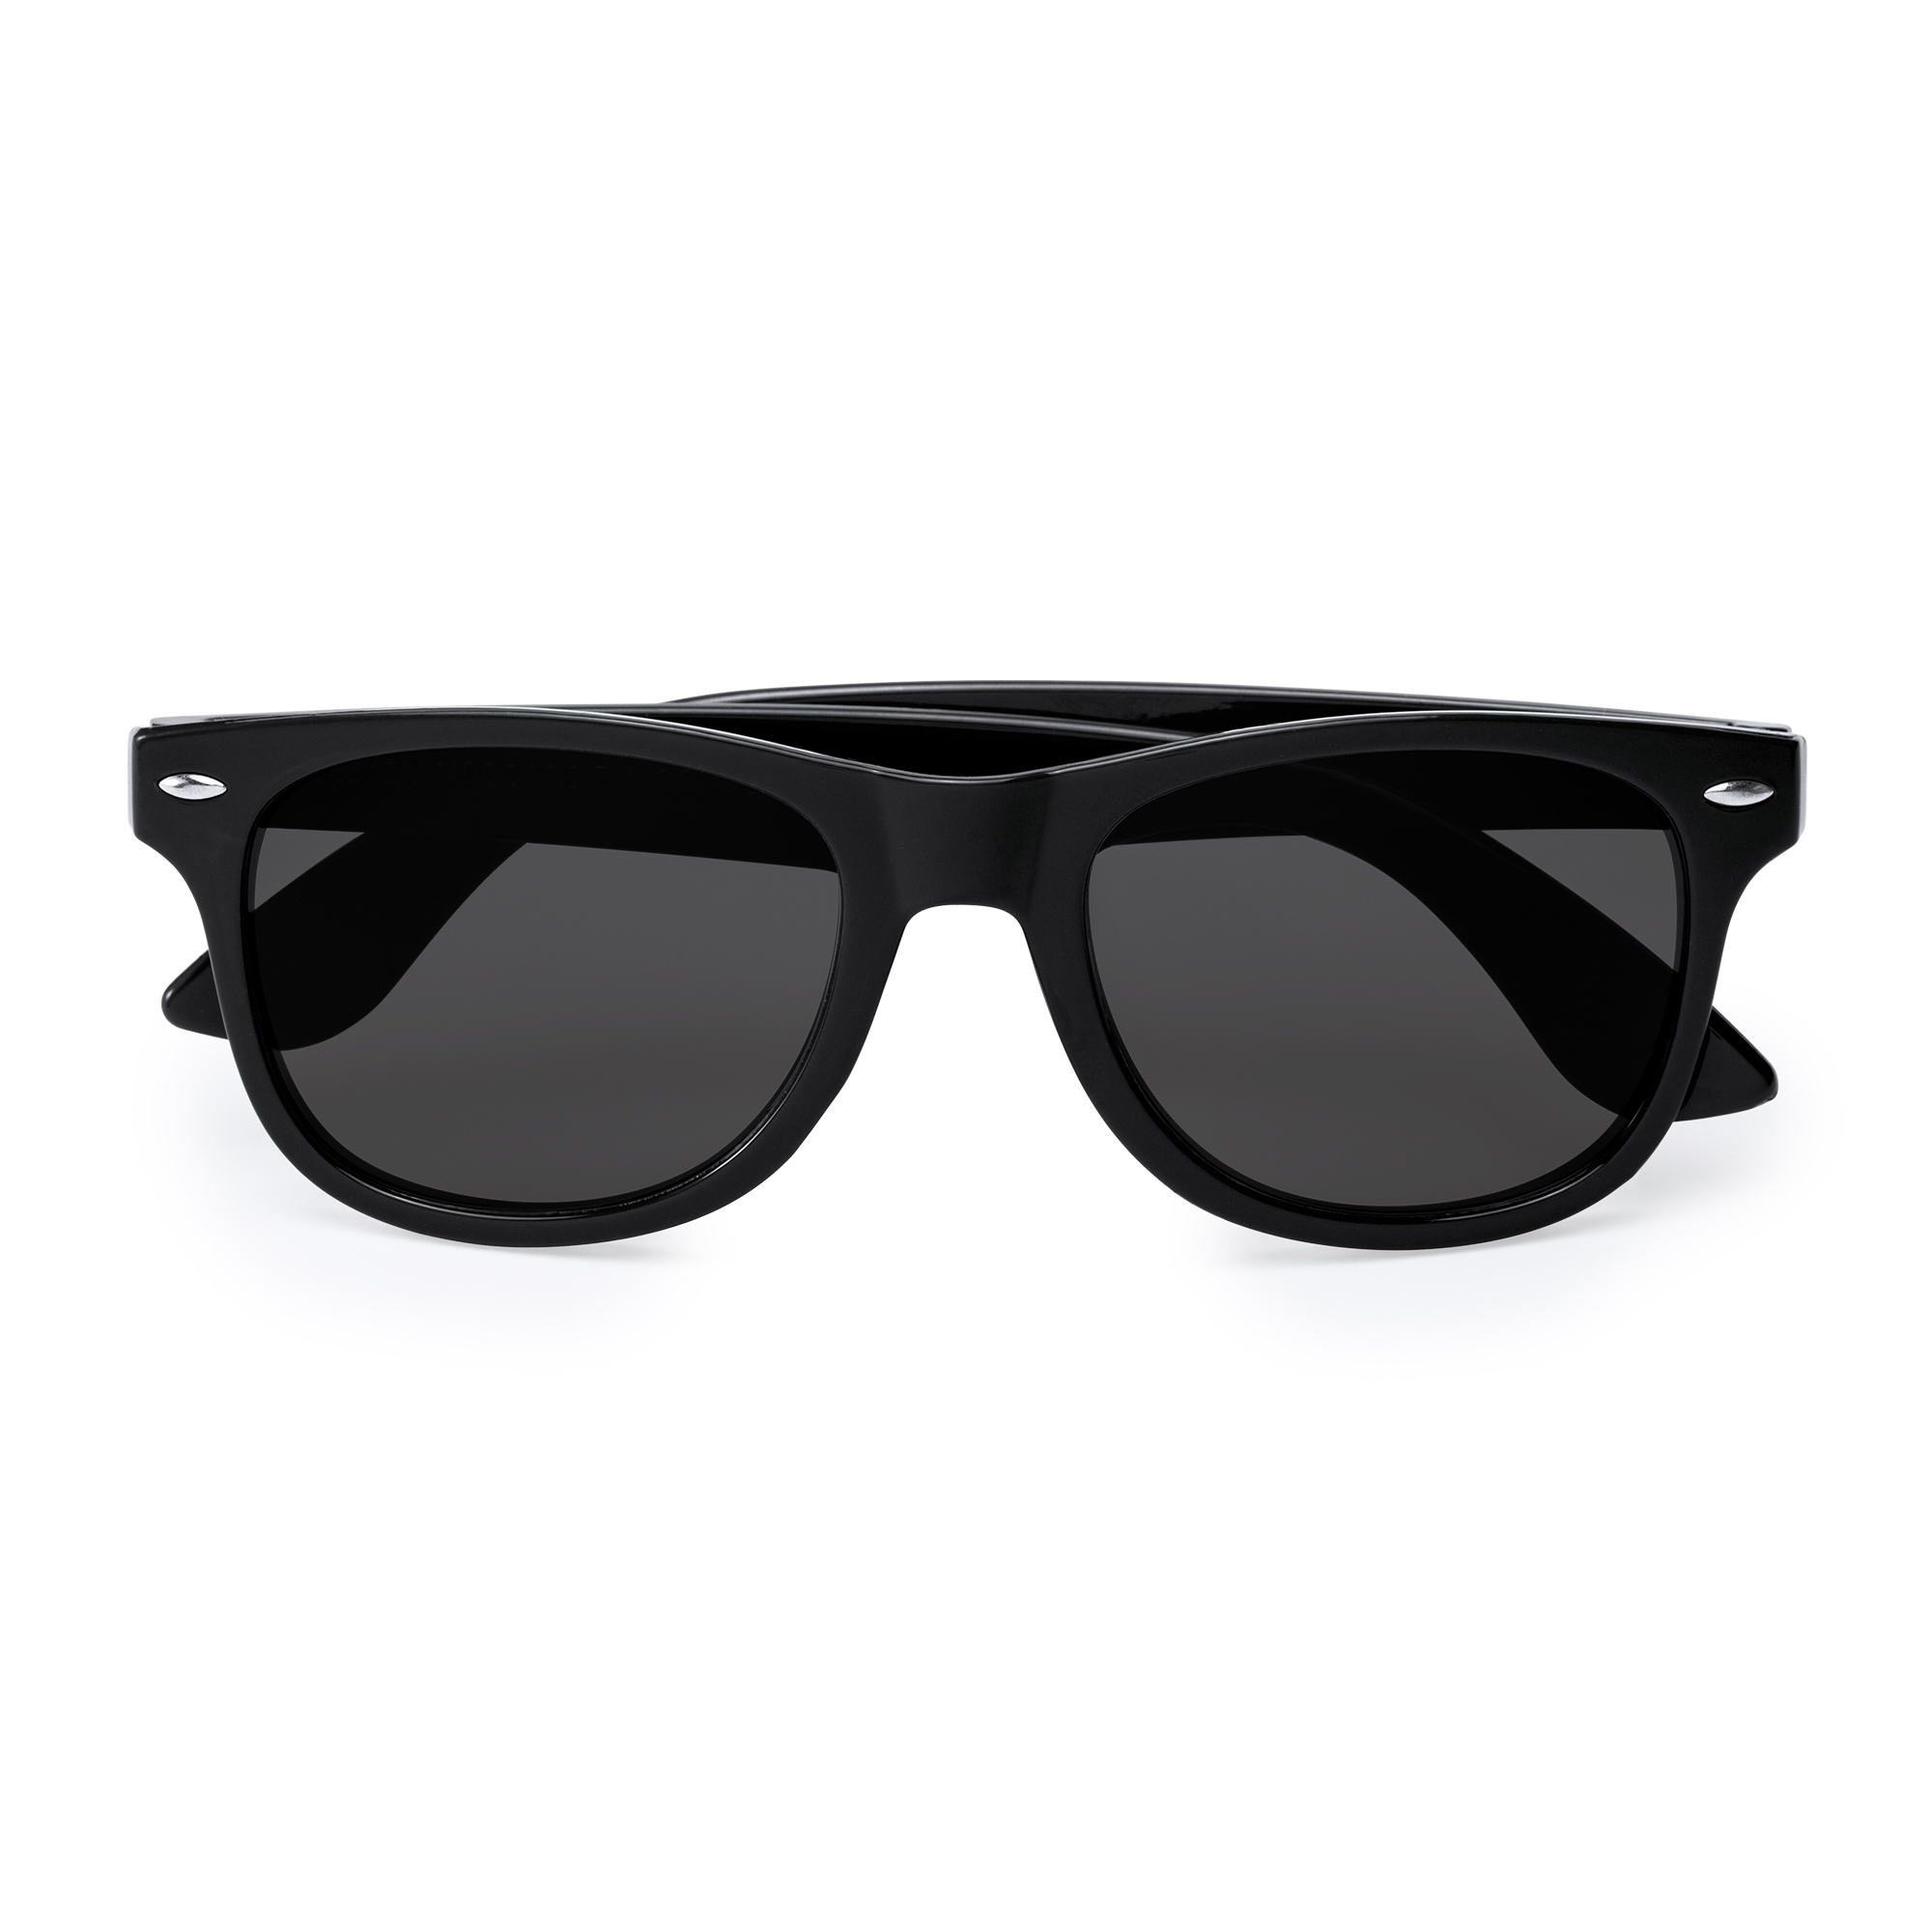 6012-sun-occhiali-da-sole-protezione-uv400-nero.jpg